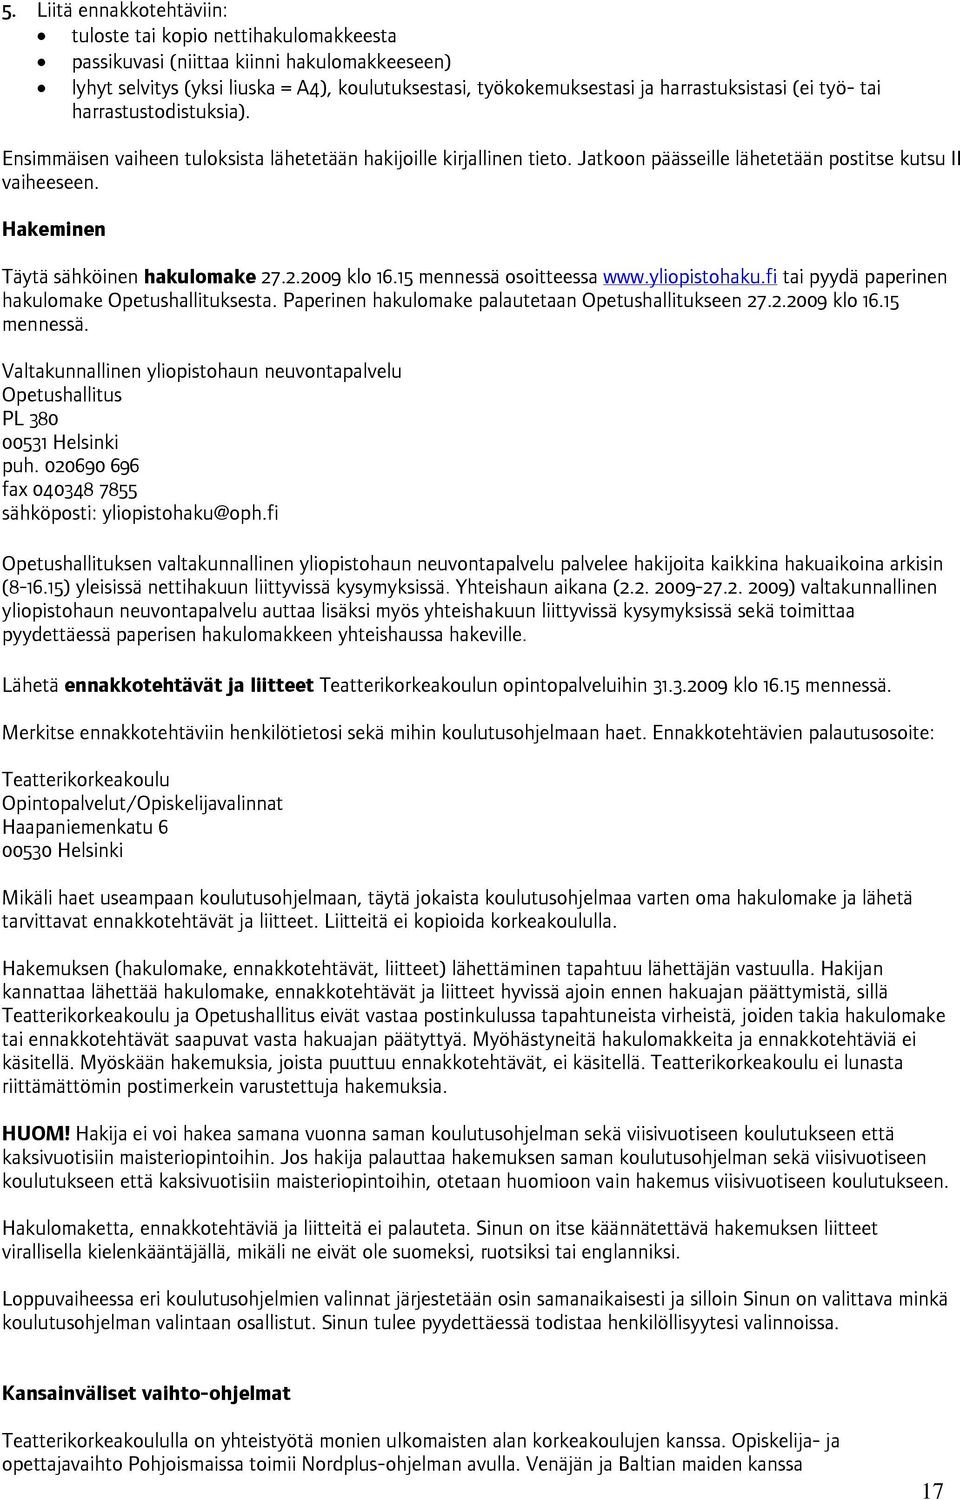 Hakeminen Täytä sähköinen hakulomake 27.2.2009 klo 16.15 mennessä osoitteessa www.yliopistohaku.fi tai pyydä paperinen hakulomake Opetushallituksesta.